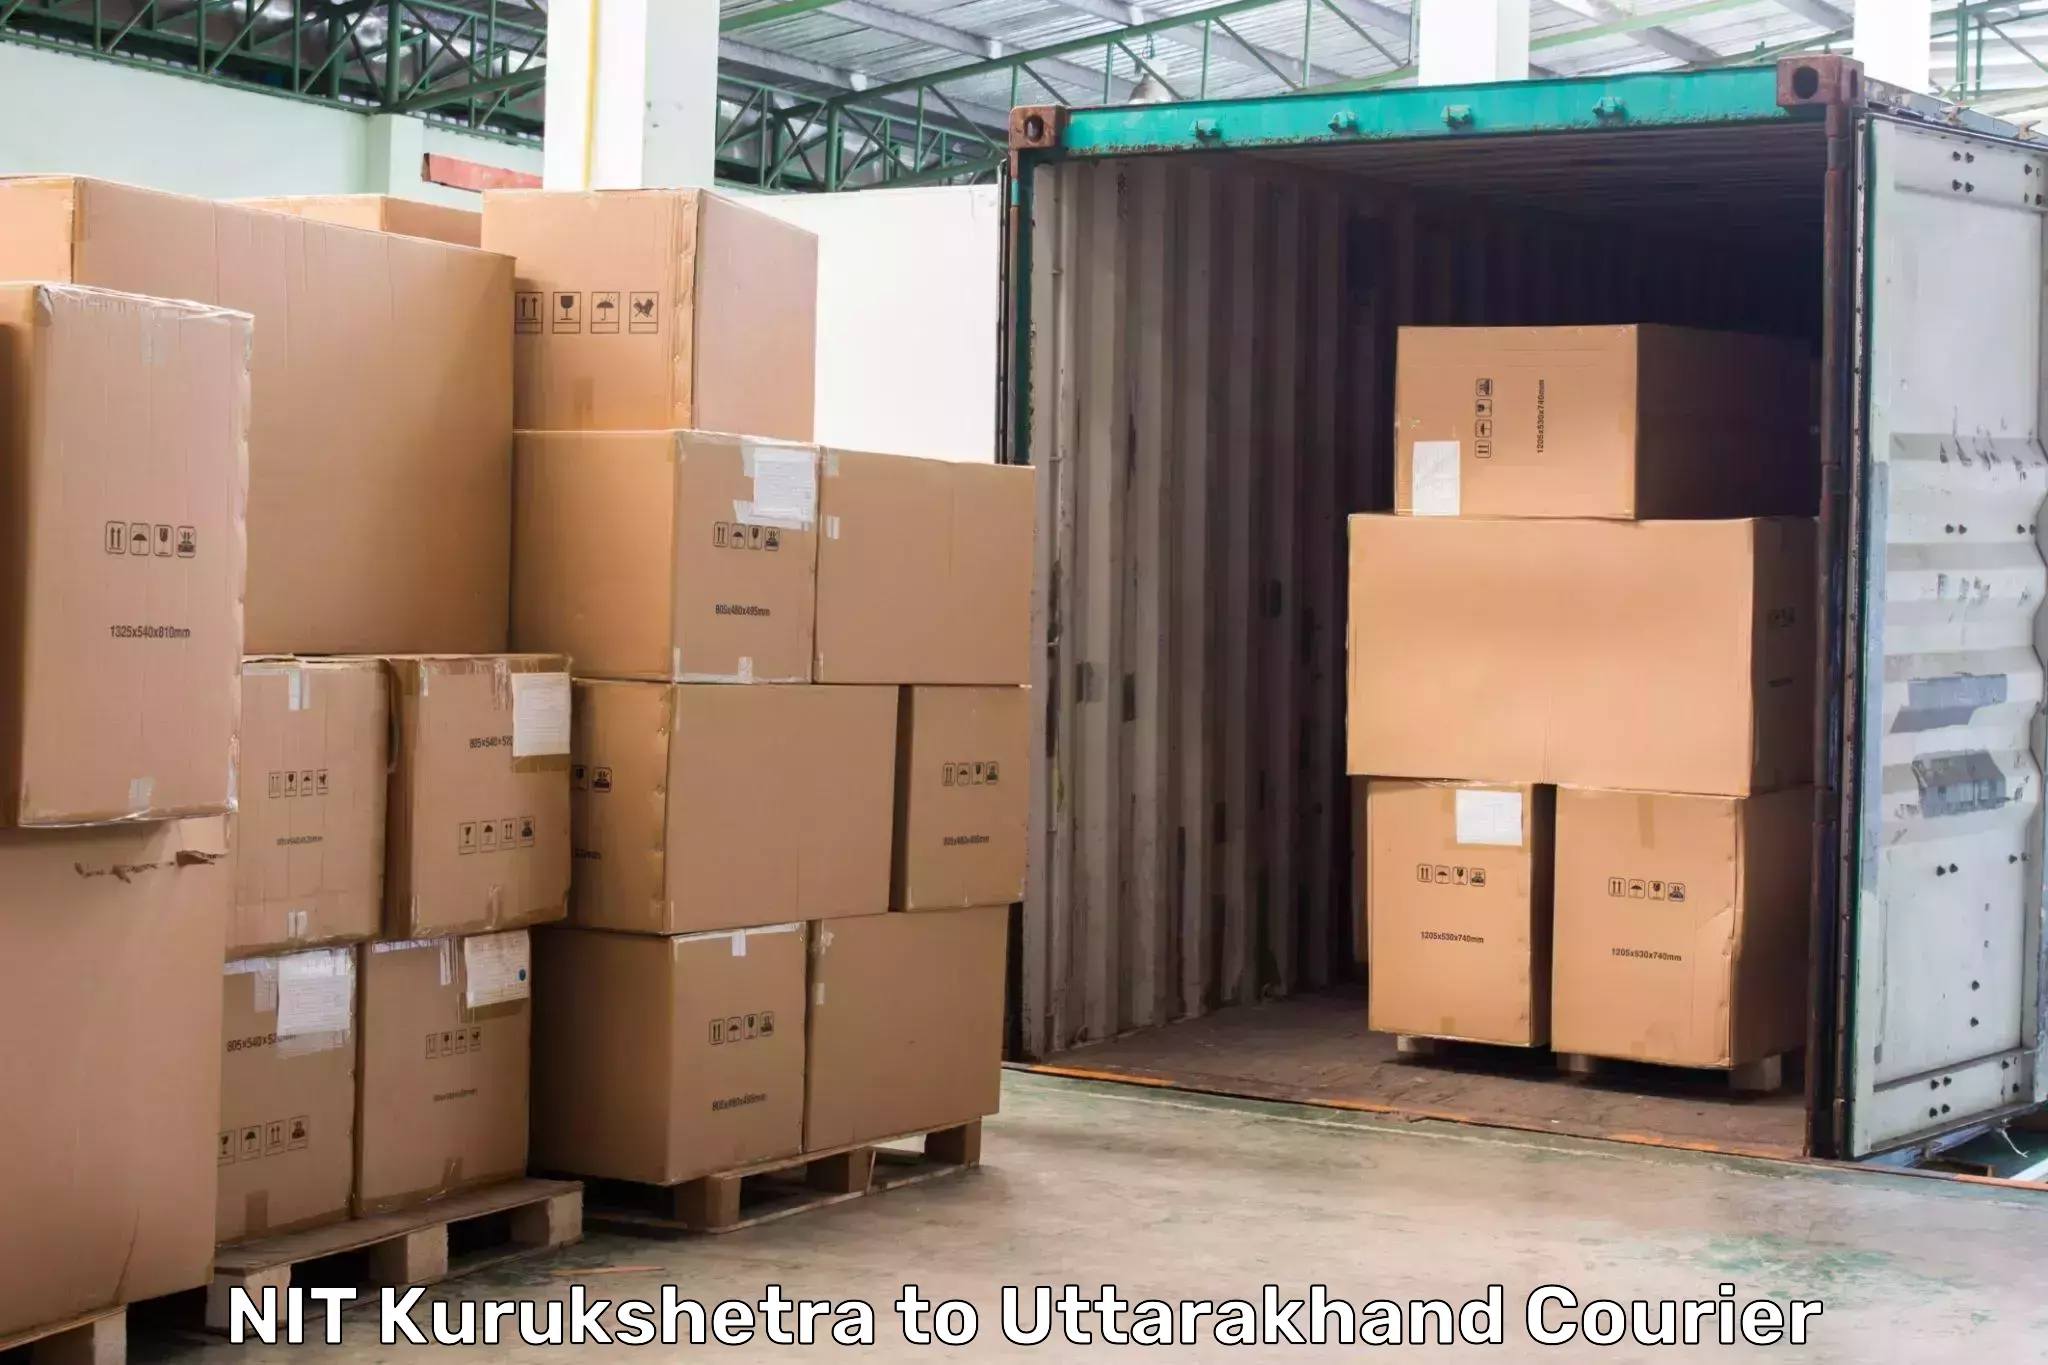 Urgent courier needs NIT Kurukshetra to Srinagar Pauri Garhwal